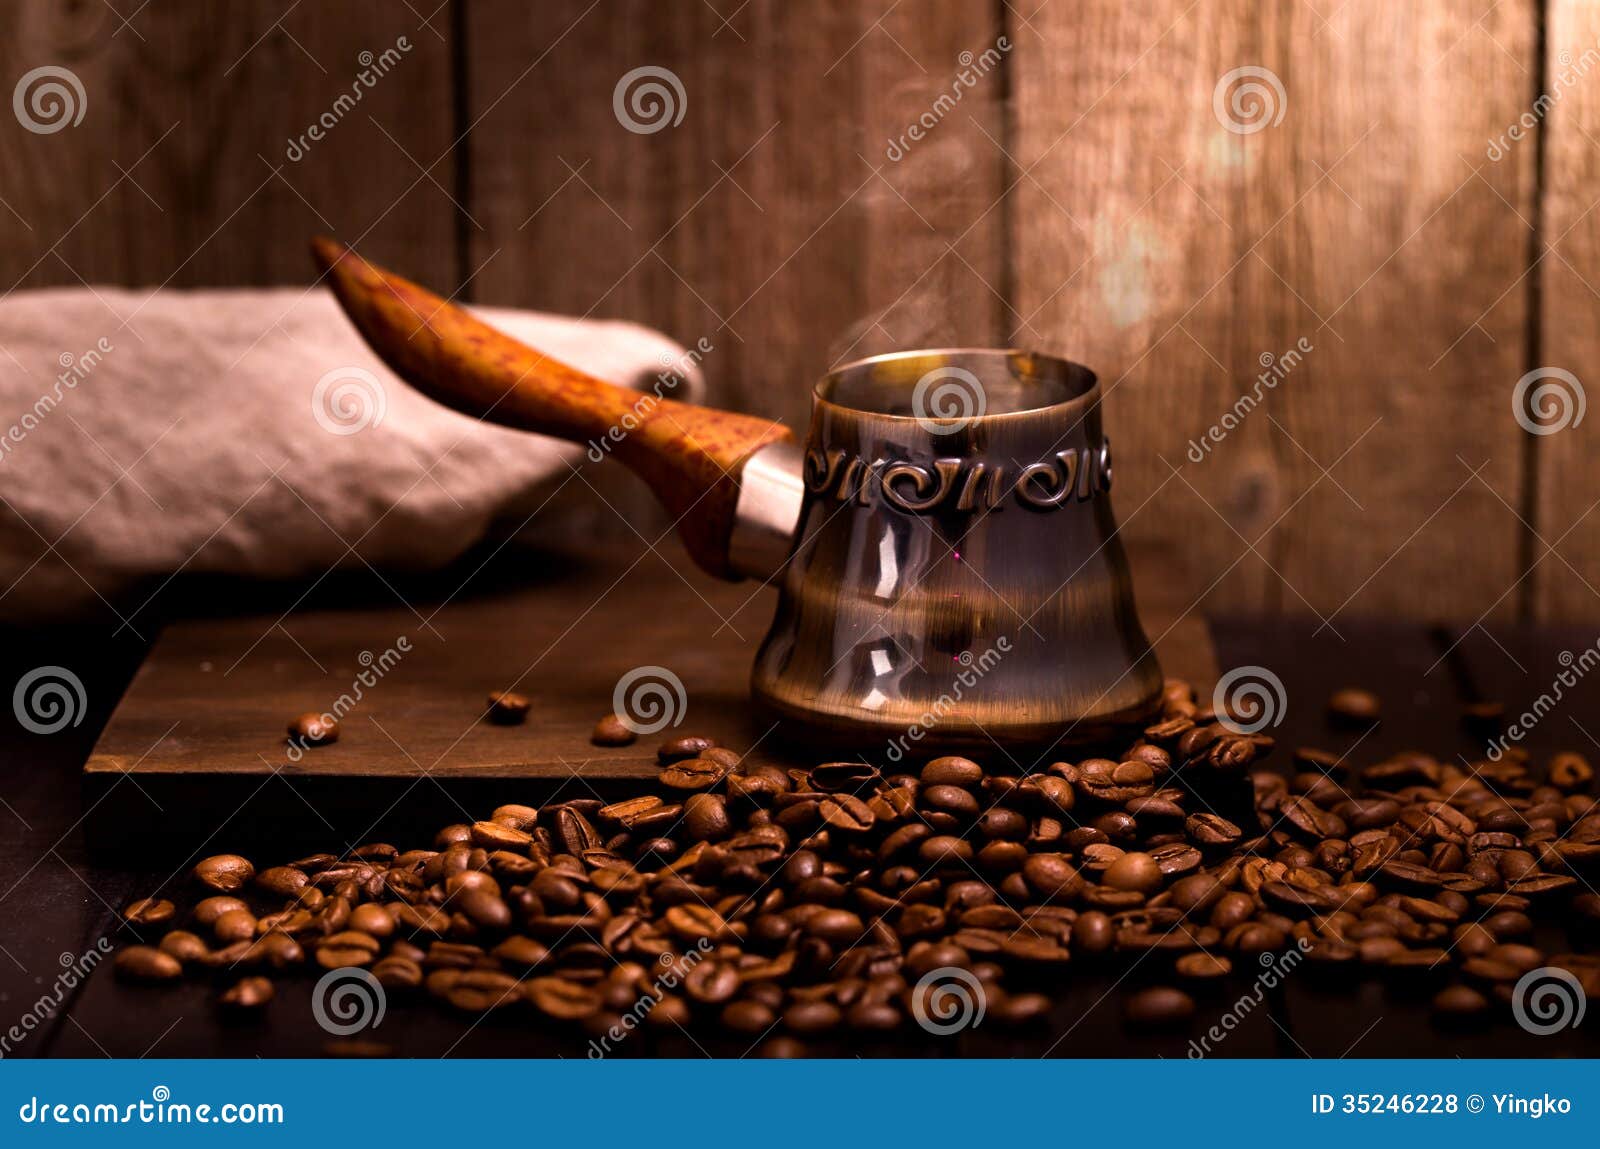 coffee brewing pot